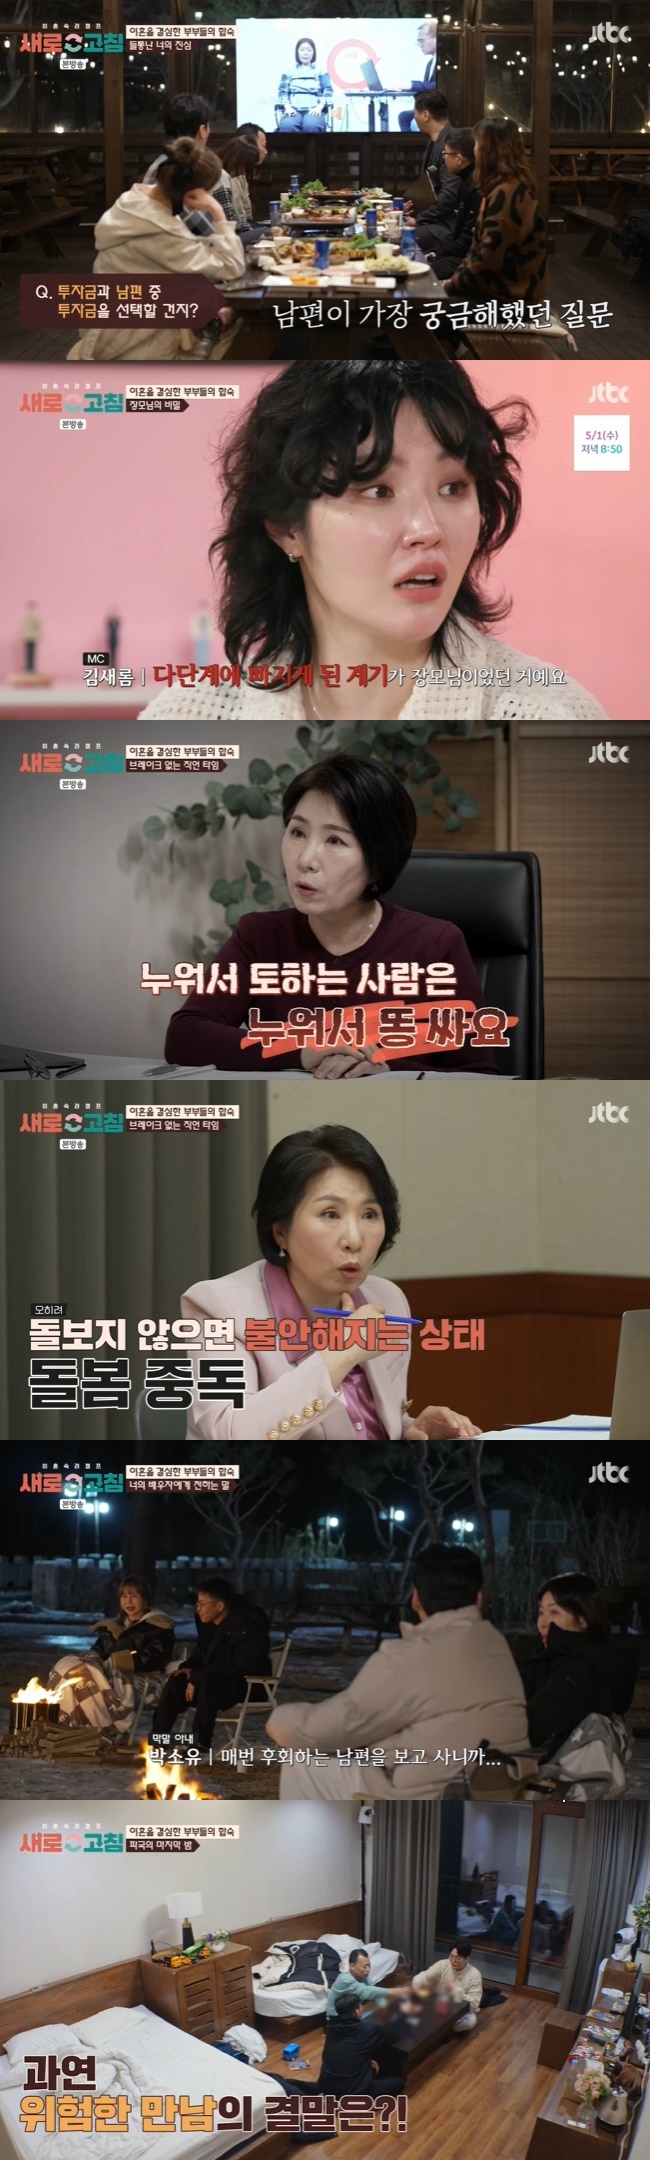 (사진= JTBC ‘이혼숙려캠프: 새로고침’ 캡처)